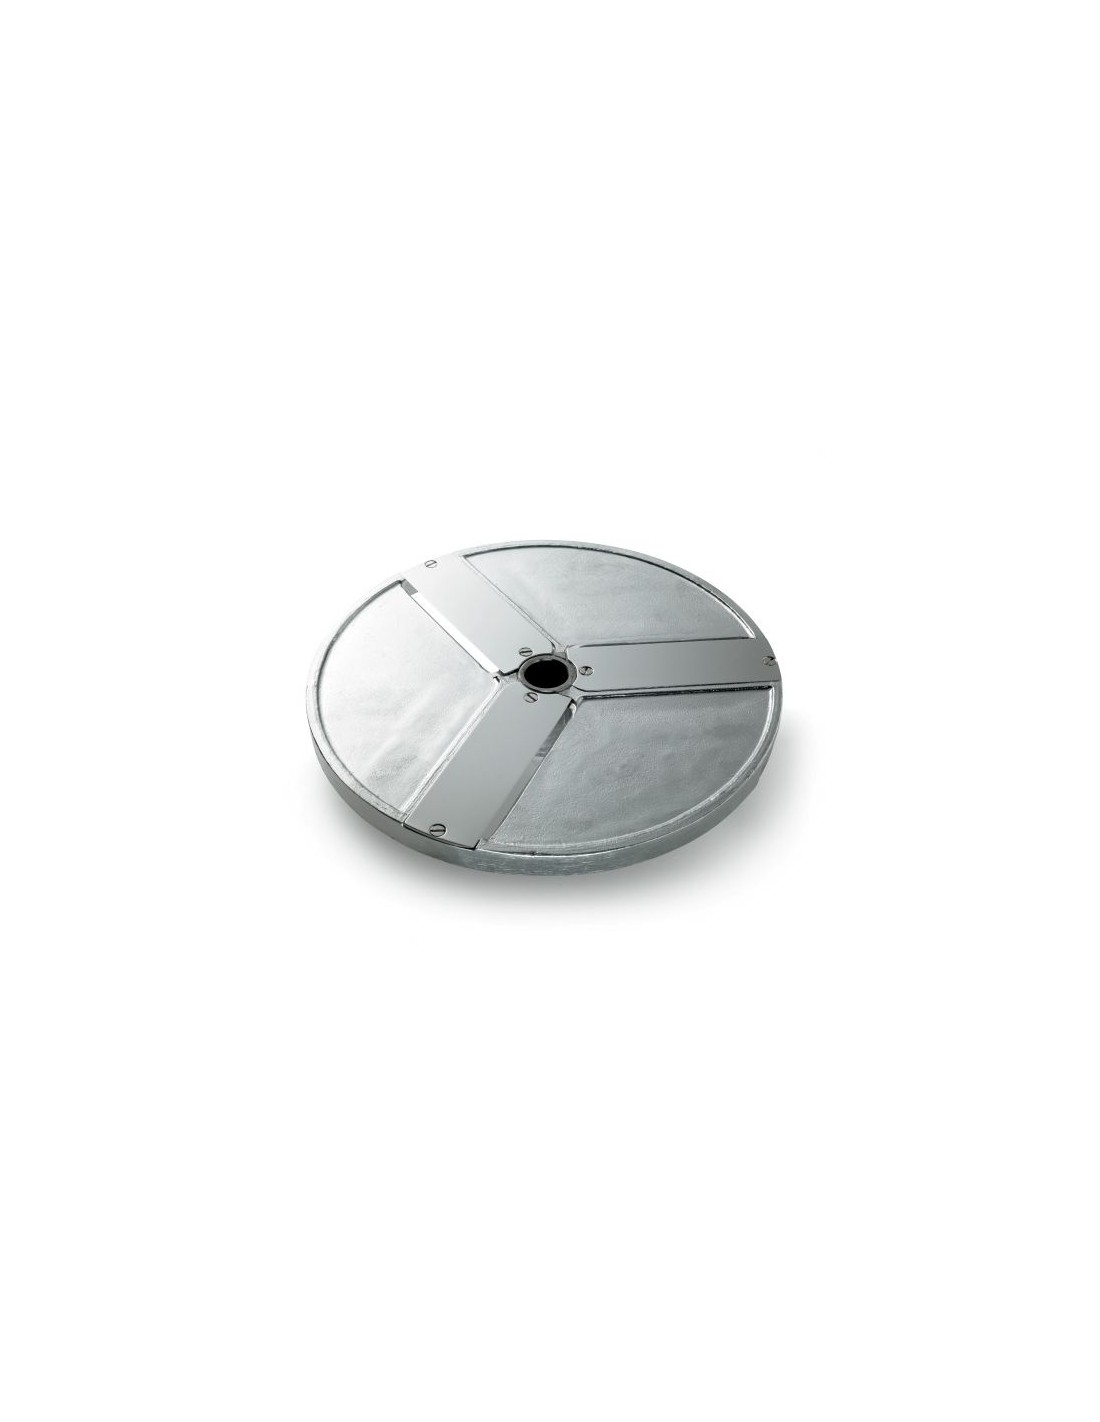 Disco per fette - Diametro mm 205 - Spessore taglio mm 100